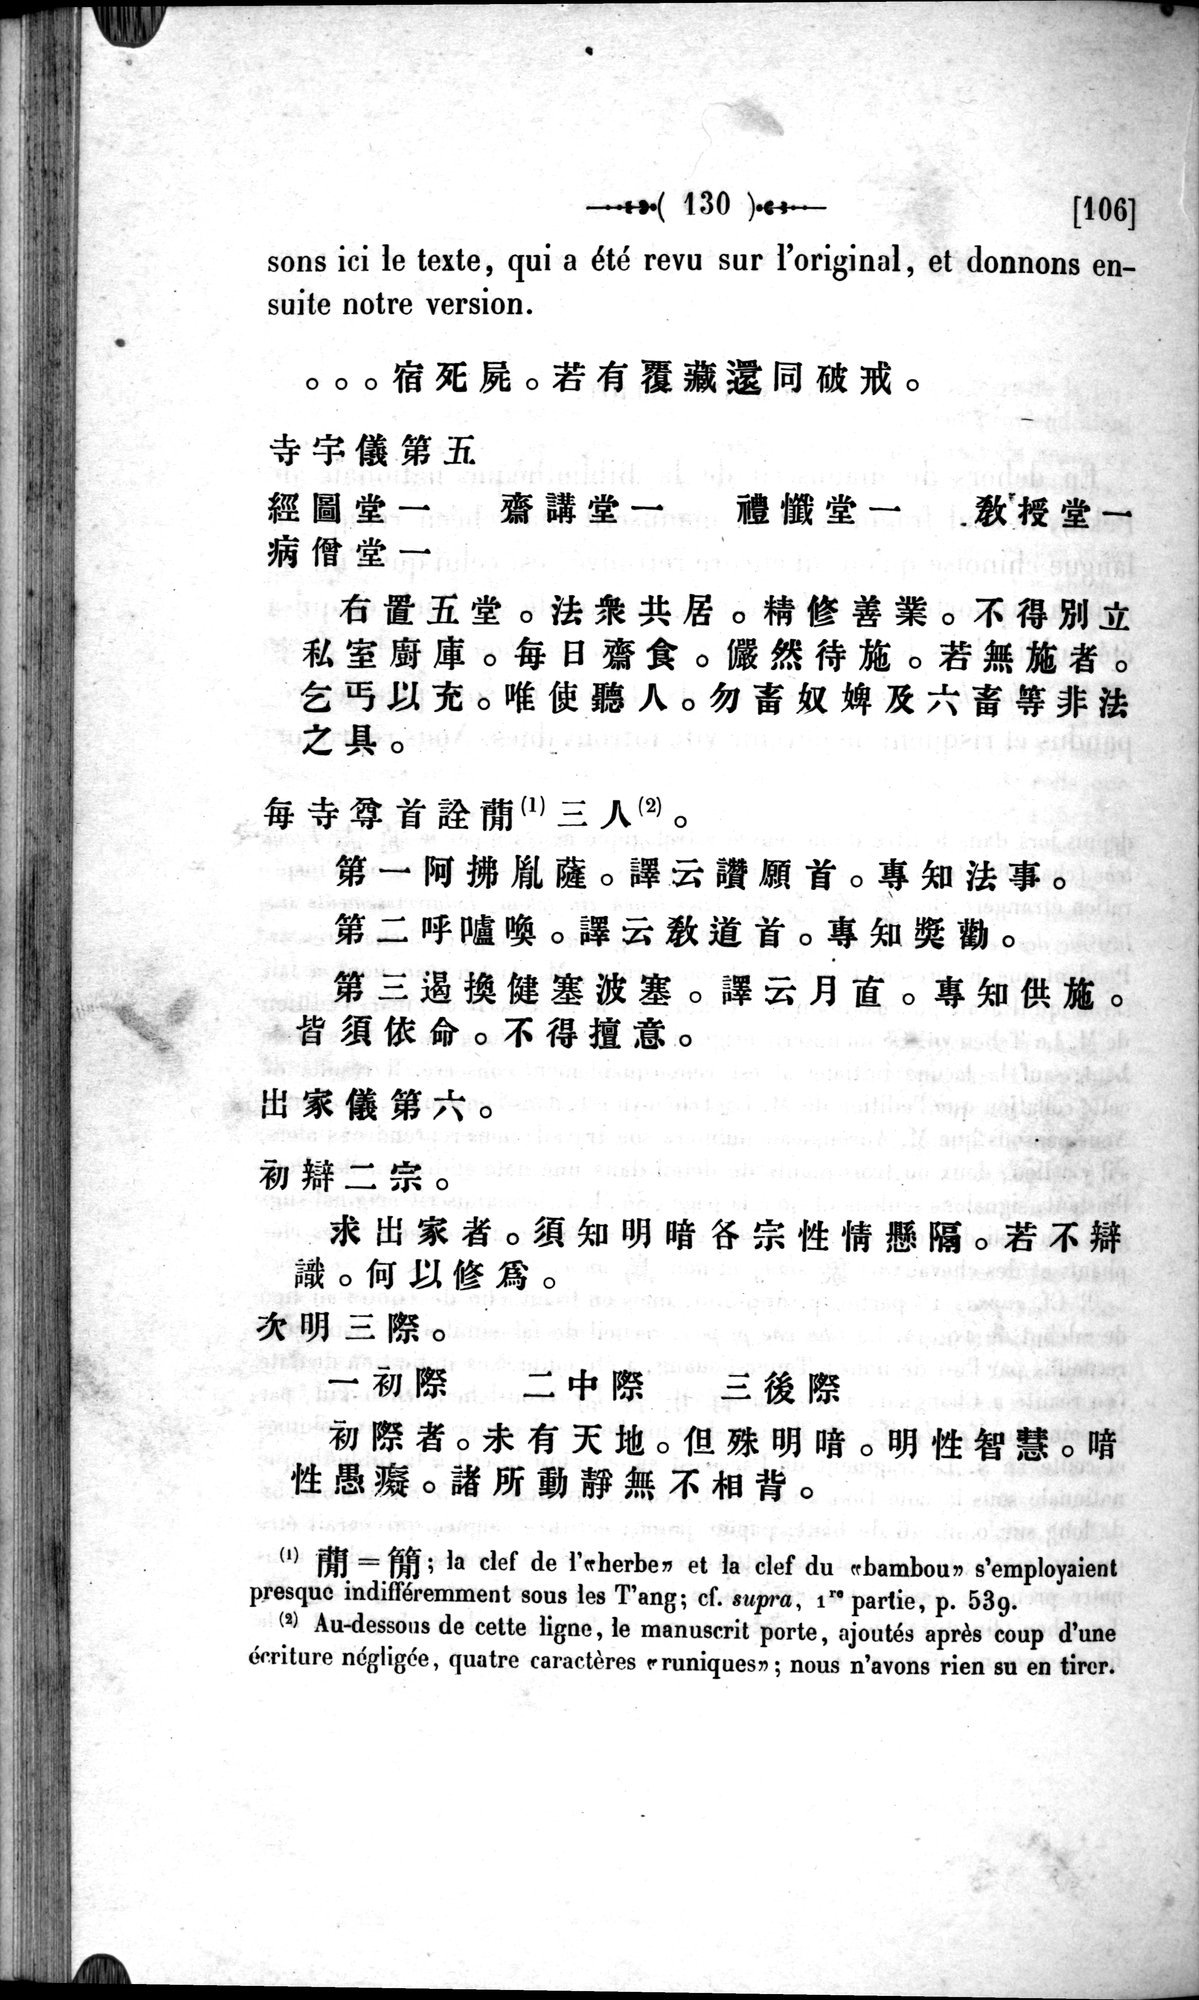 Un traité manichéen retrouvé en Chine : vol.1 / Page 140 (Grayscale High Resolution Image)